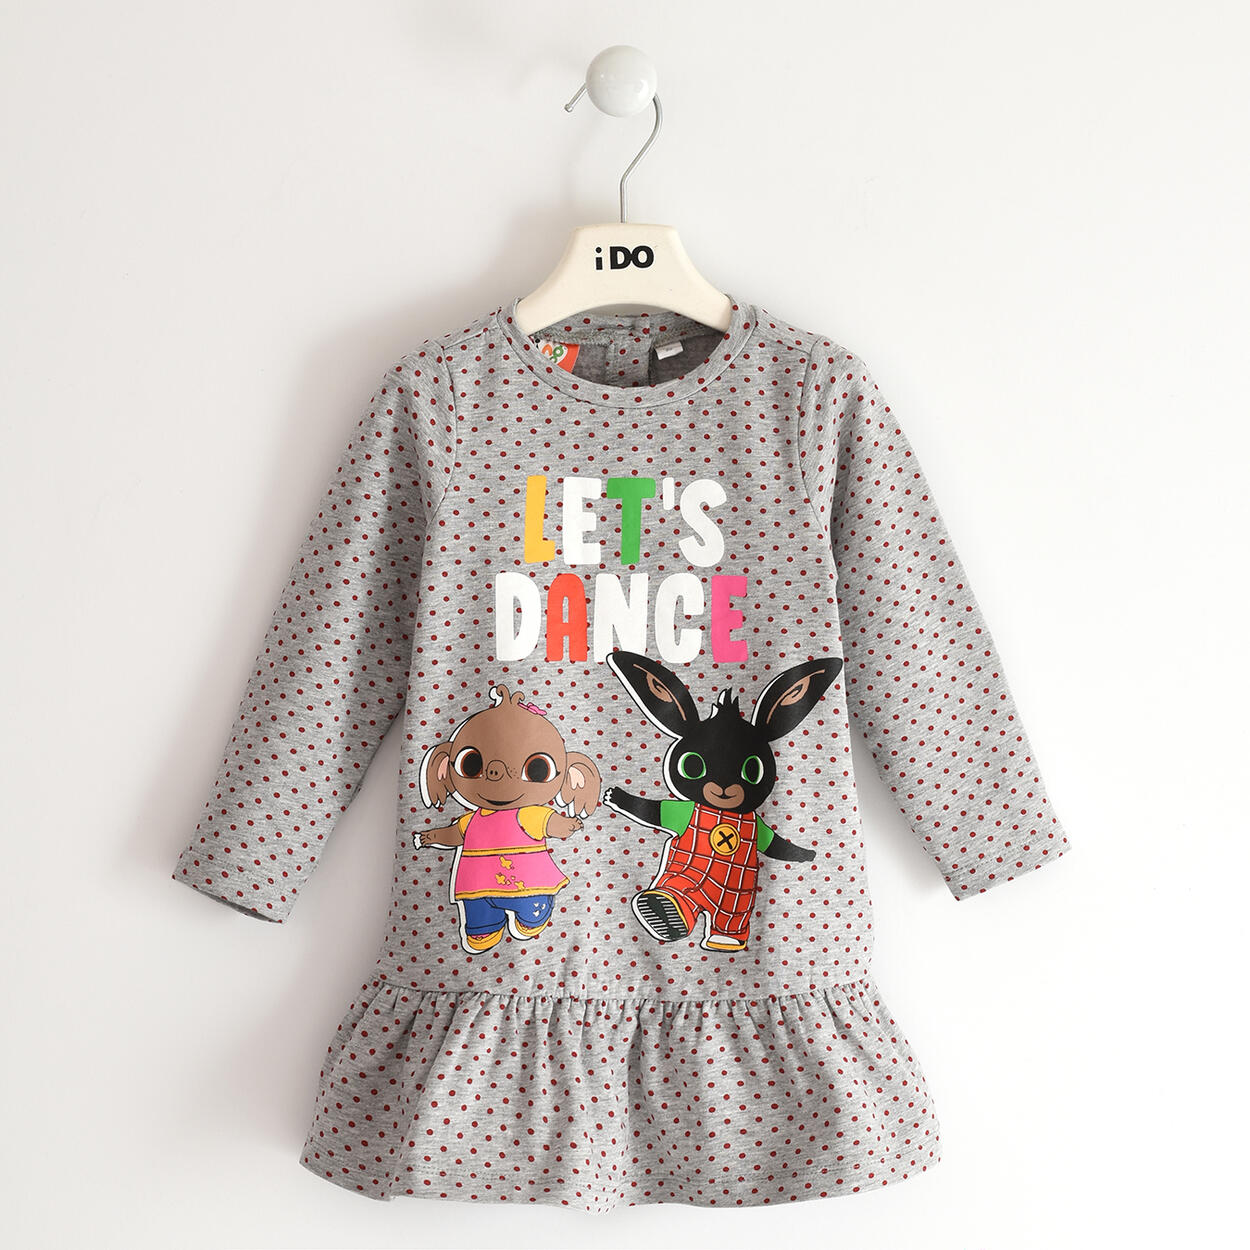 Vestito bambina capsule Bing - da 12 mesi a 6 anni iDO - ABITI - Bambina -  iDO